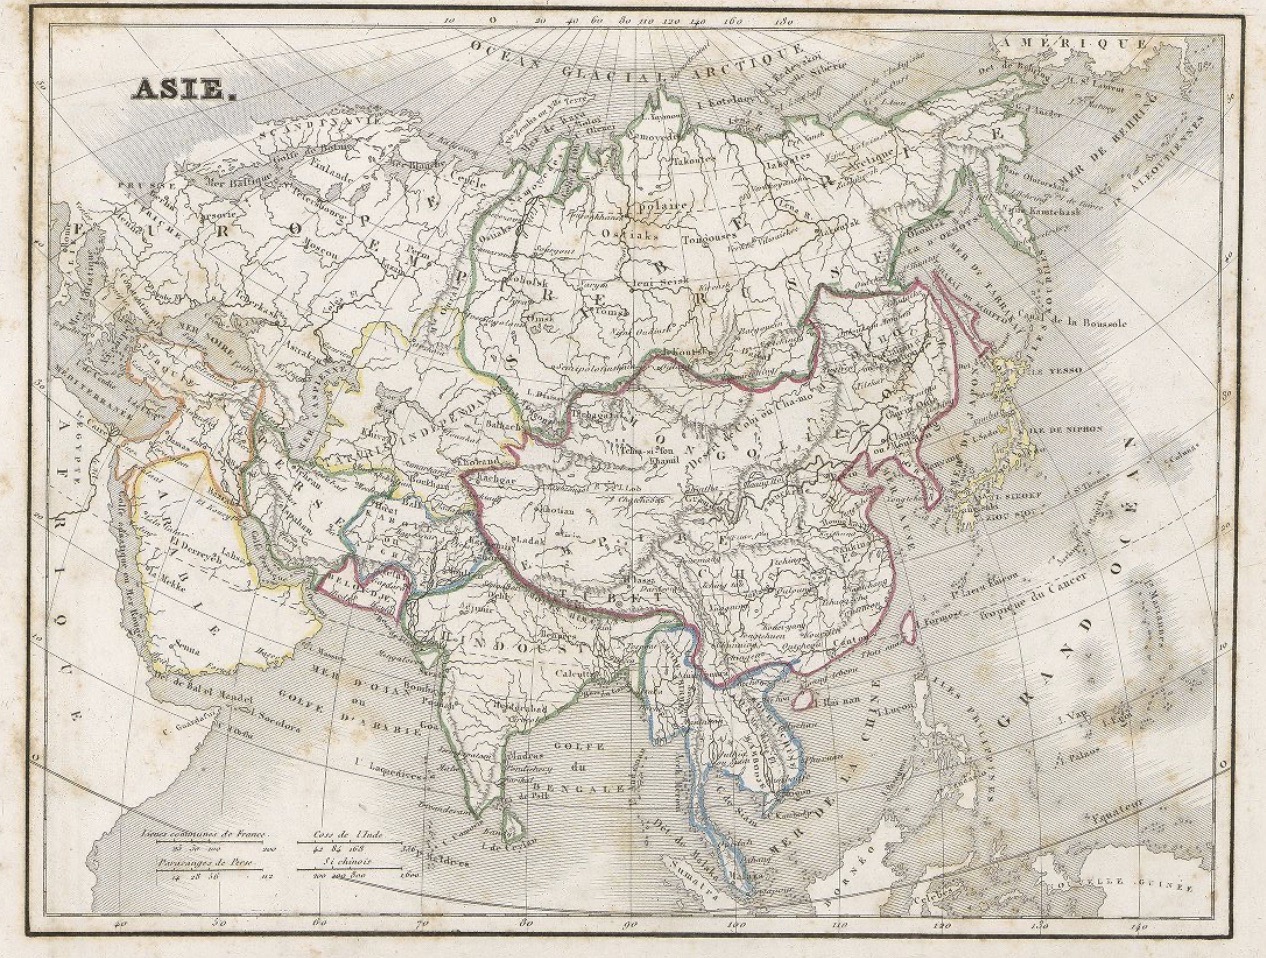 Monin: Atlas universel 1840, "Asie"